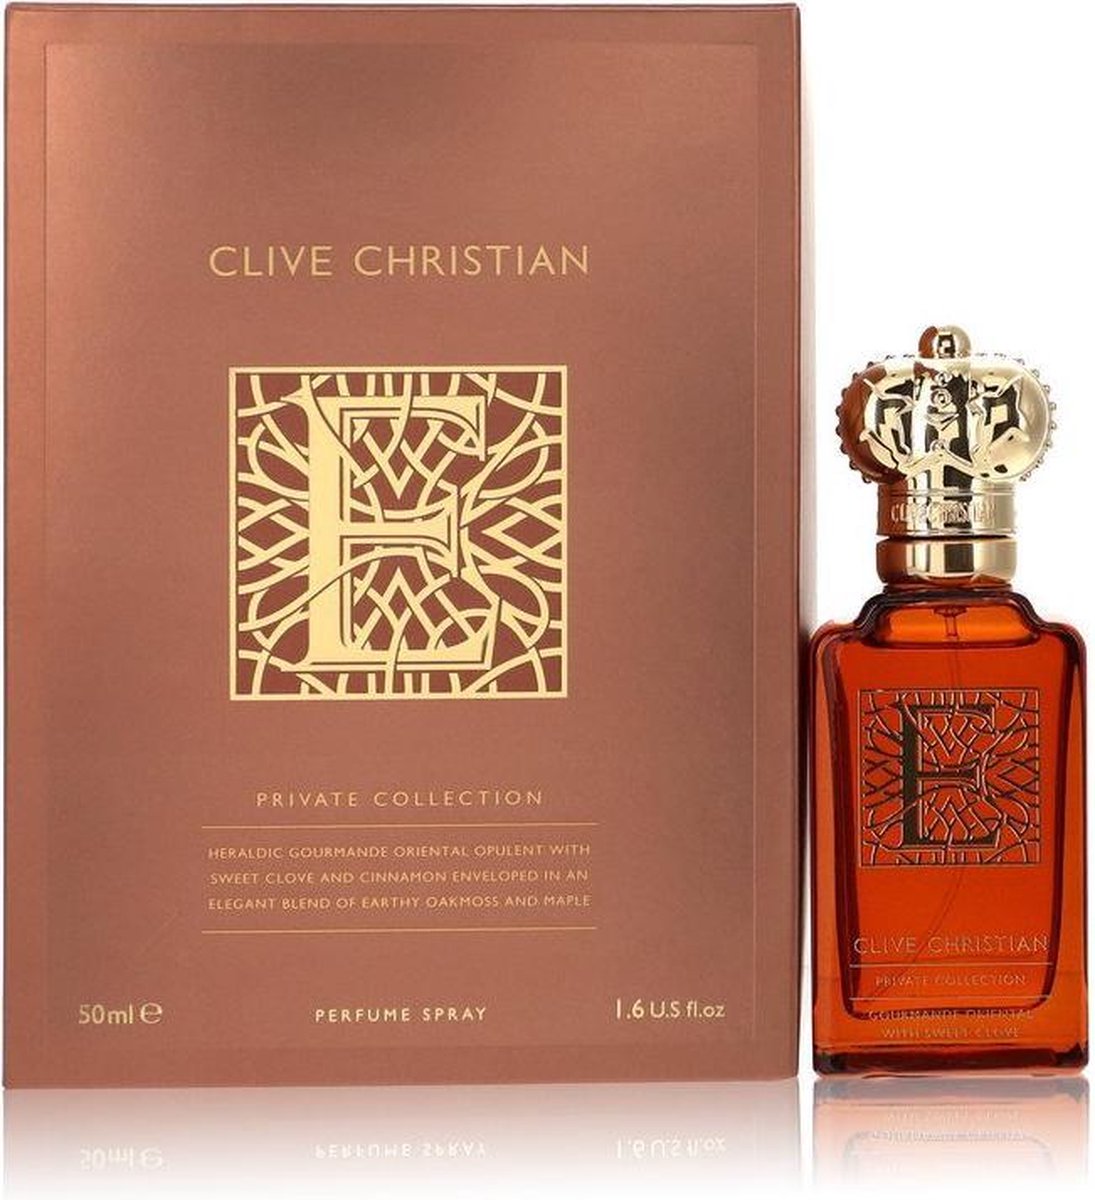 Clive Christian E Gourmande Oriental by Clive Christian 50 ml - Eau De Parfum Spray